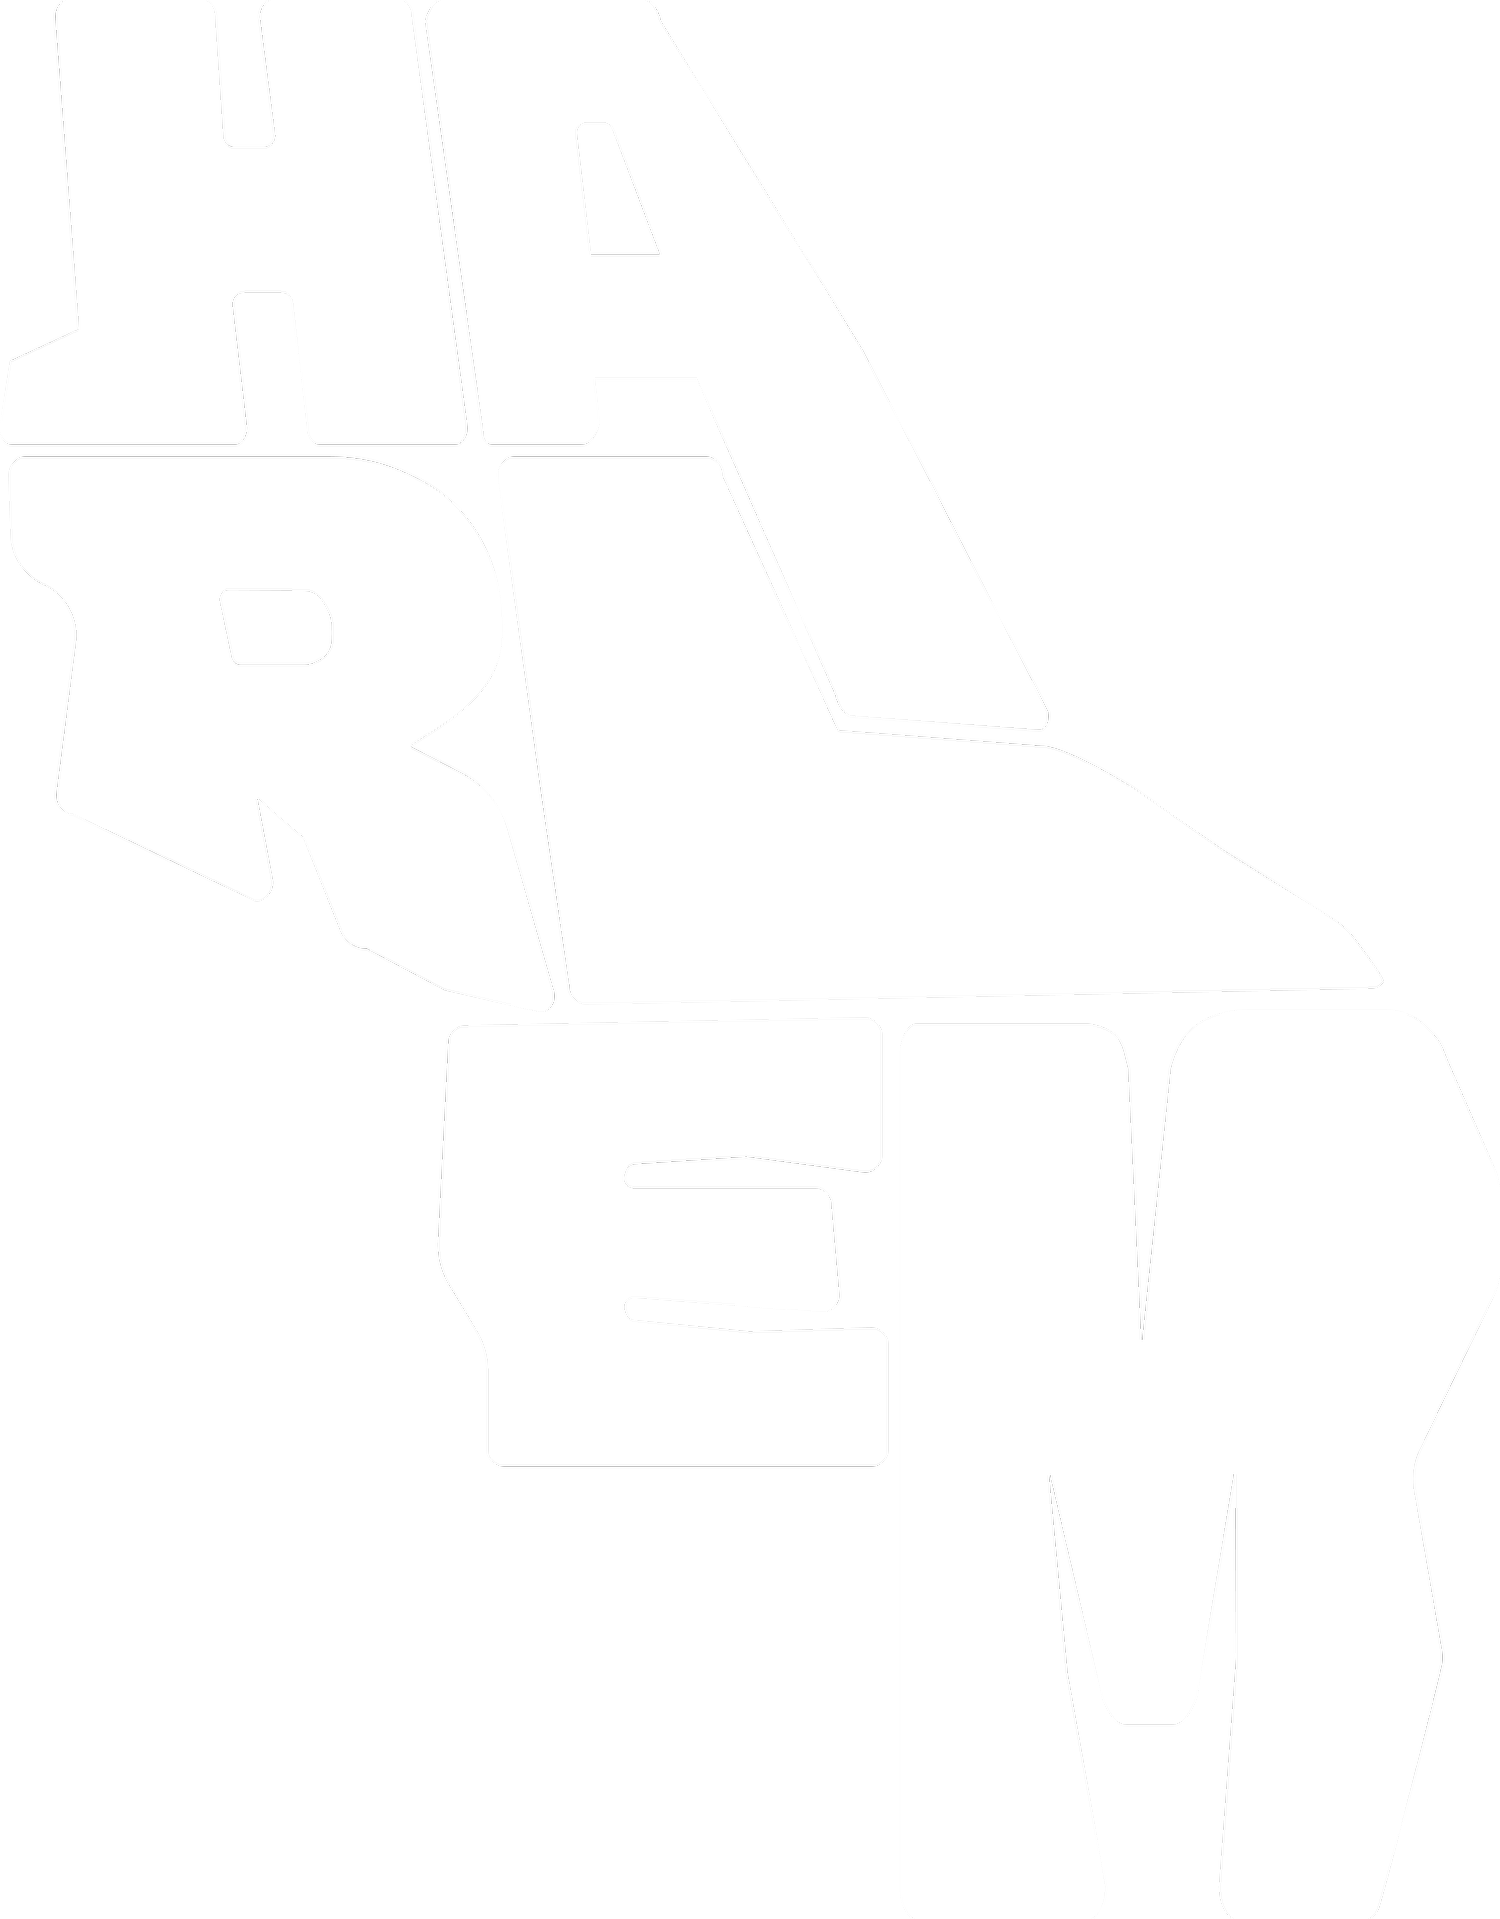 H.A.R.L.E.M